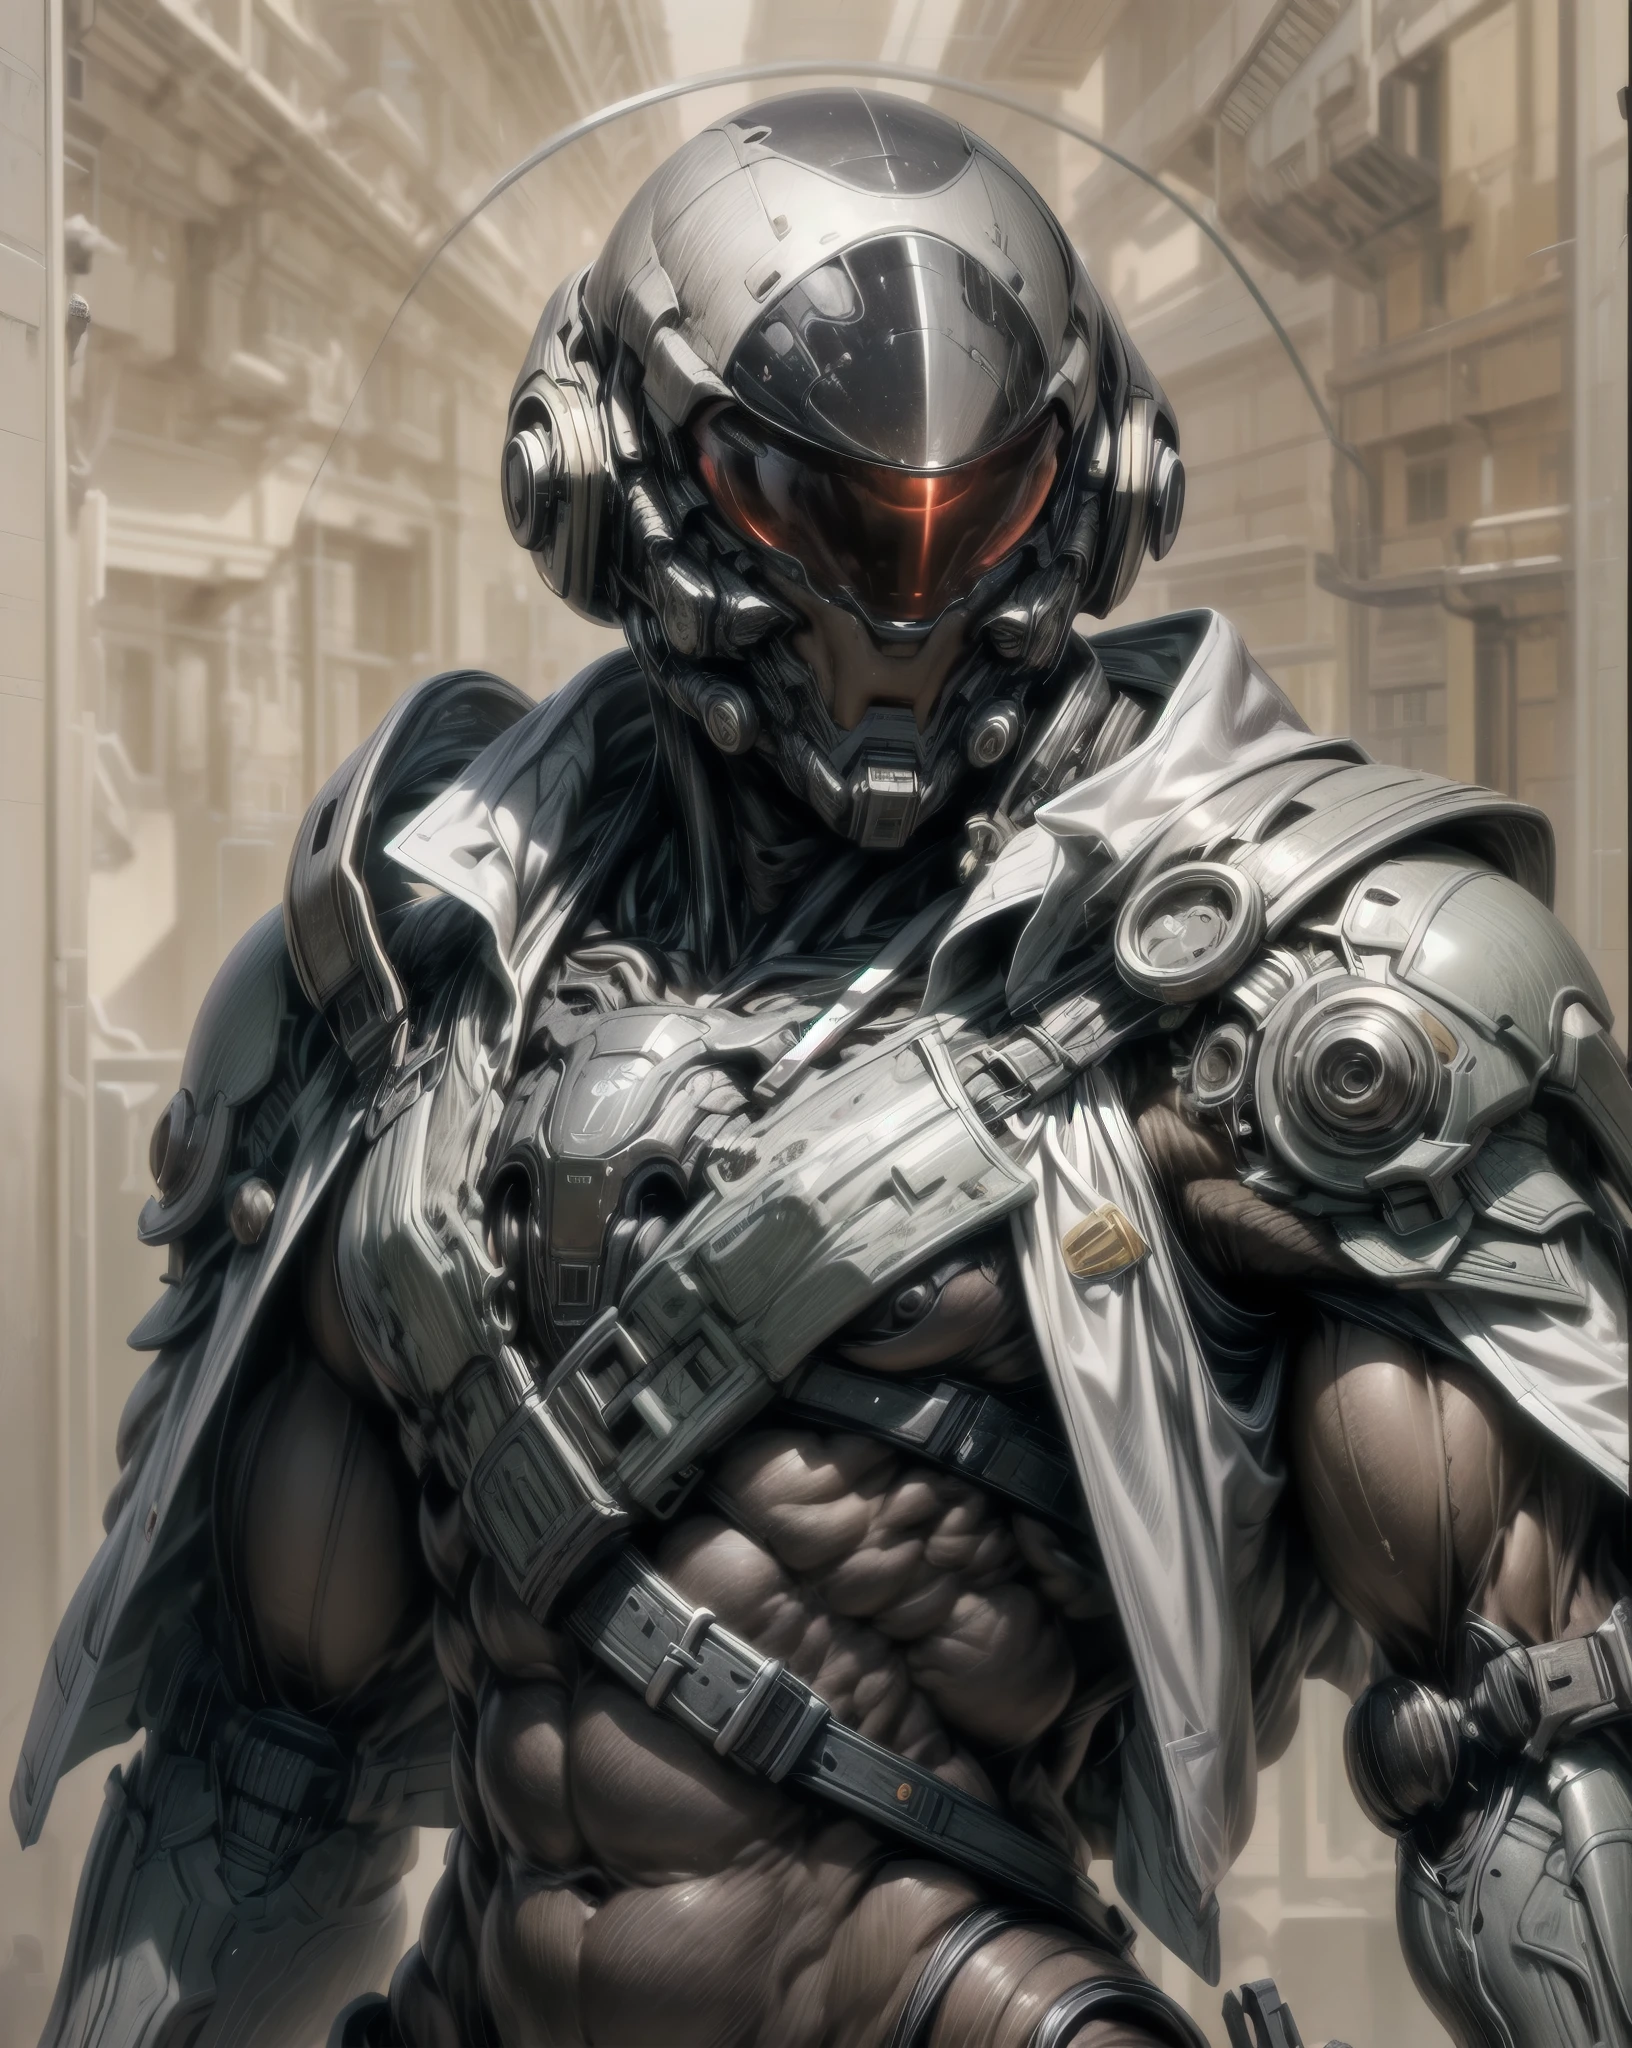 (((epic and visually stunning complex digital anime ผลงานชิ้นเอก:1.6, elegant decorated เกี่ยวกับยุทธวิธี military cyborg:1.3, ((ร่างกายชายที่งดงามของผู้หญิง:1.3, สง่างาม:1.4)) ทหารอวกาศ:1.3))), (((หน้าอกของผู้ชายที่มีกล้ามเนื้อหนักมาก:1.4, สิ่วหน้าท้อง:1.4, กระชับหนัก:1.4, ผอมเพรียว แต่มีกล้ามเนื้อ:1.3))), (((ซับซ้อนและสวยงาม:1.3, เกี่ยวกับยุทธวิธี:1.3, สไตล์แฟนตาซีไซไฟที่น่าทึ่ง:1.5, หมวกกันน็อคจักรกลสไตล์ไซไฟที่สวยงาม:1.5, กระบังหน้าโพลาไรซ์:1.5))), (((elegant เกี่ยวกับยุทธวิธี double breasted trench coat:1.5, โครงกระดูกภายนอกเพรียวบาง:1.3))), (((ชุบเกราะแบบพอดีตัว:1.3, เย้ายวนสุดโฉบเฉี่ยวเผยให้เห็นใต้ชุดสูท:1.5, เผยให้เห็นเอวและต้นขา:1.5)), ((แก่นแท้ของความเป็นผู้หญิงอันหรูหรา:1.4, ความงามแบบกอธิคกลหนัก:1.4)), ((การสร้างร่างกายกะเทย)), (((รูปร่างที่เพรียวบางแต่มีกล้ามเนื้อของหญิงสาวที่งดงาม:1.4, กล้ามเนื้อที่กำหนดไว้อย่างสวยงามสมบูรณ์แบบ:1.4, แขนและขากลที่เพรียวบางกระชับ:1.4, ต้นขาโค้งมนหนา:1.5, กล้ามเนื้อกล))), ((((ความชัดลึก, แสงภาพยนตร์, ความคลาดเคลื่อนของสี, การติดตามรังสี, ยูเอชดี, ผลงานชิ้นเอก, ด้านบนของศีรษะปกคลุม, รายละเอียดสุดยอด, รายละเอียดสูง, คุณภาพสูง, ได้รับรางวัล, 8k, ความสูง)))):1.6, (((ดีเซลพังค์, เดคพังค์, กล้ามเนื้อเทียม))):1.6, (((การออกแบบสไตล์อาร์ตเดโคไซไฟที่แกะสลักอย่างสวยงาม:1.4)))